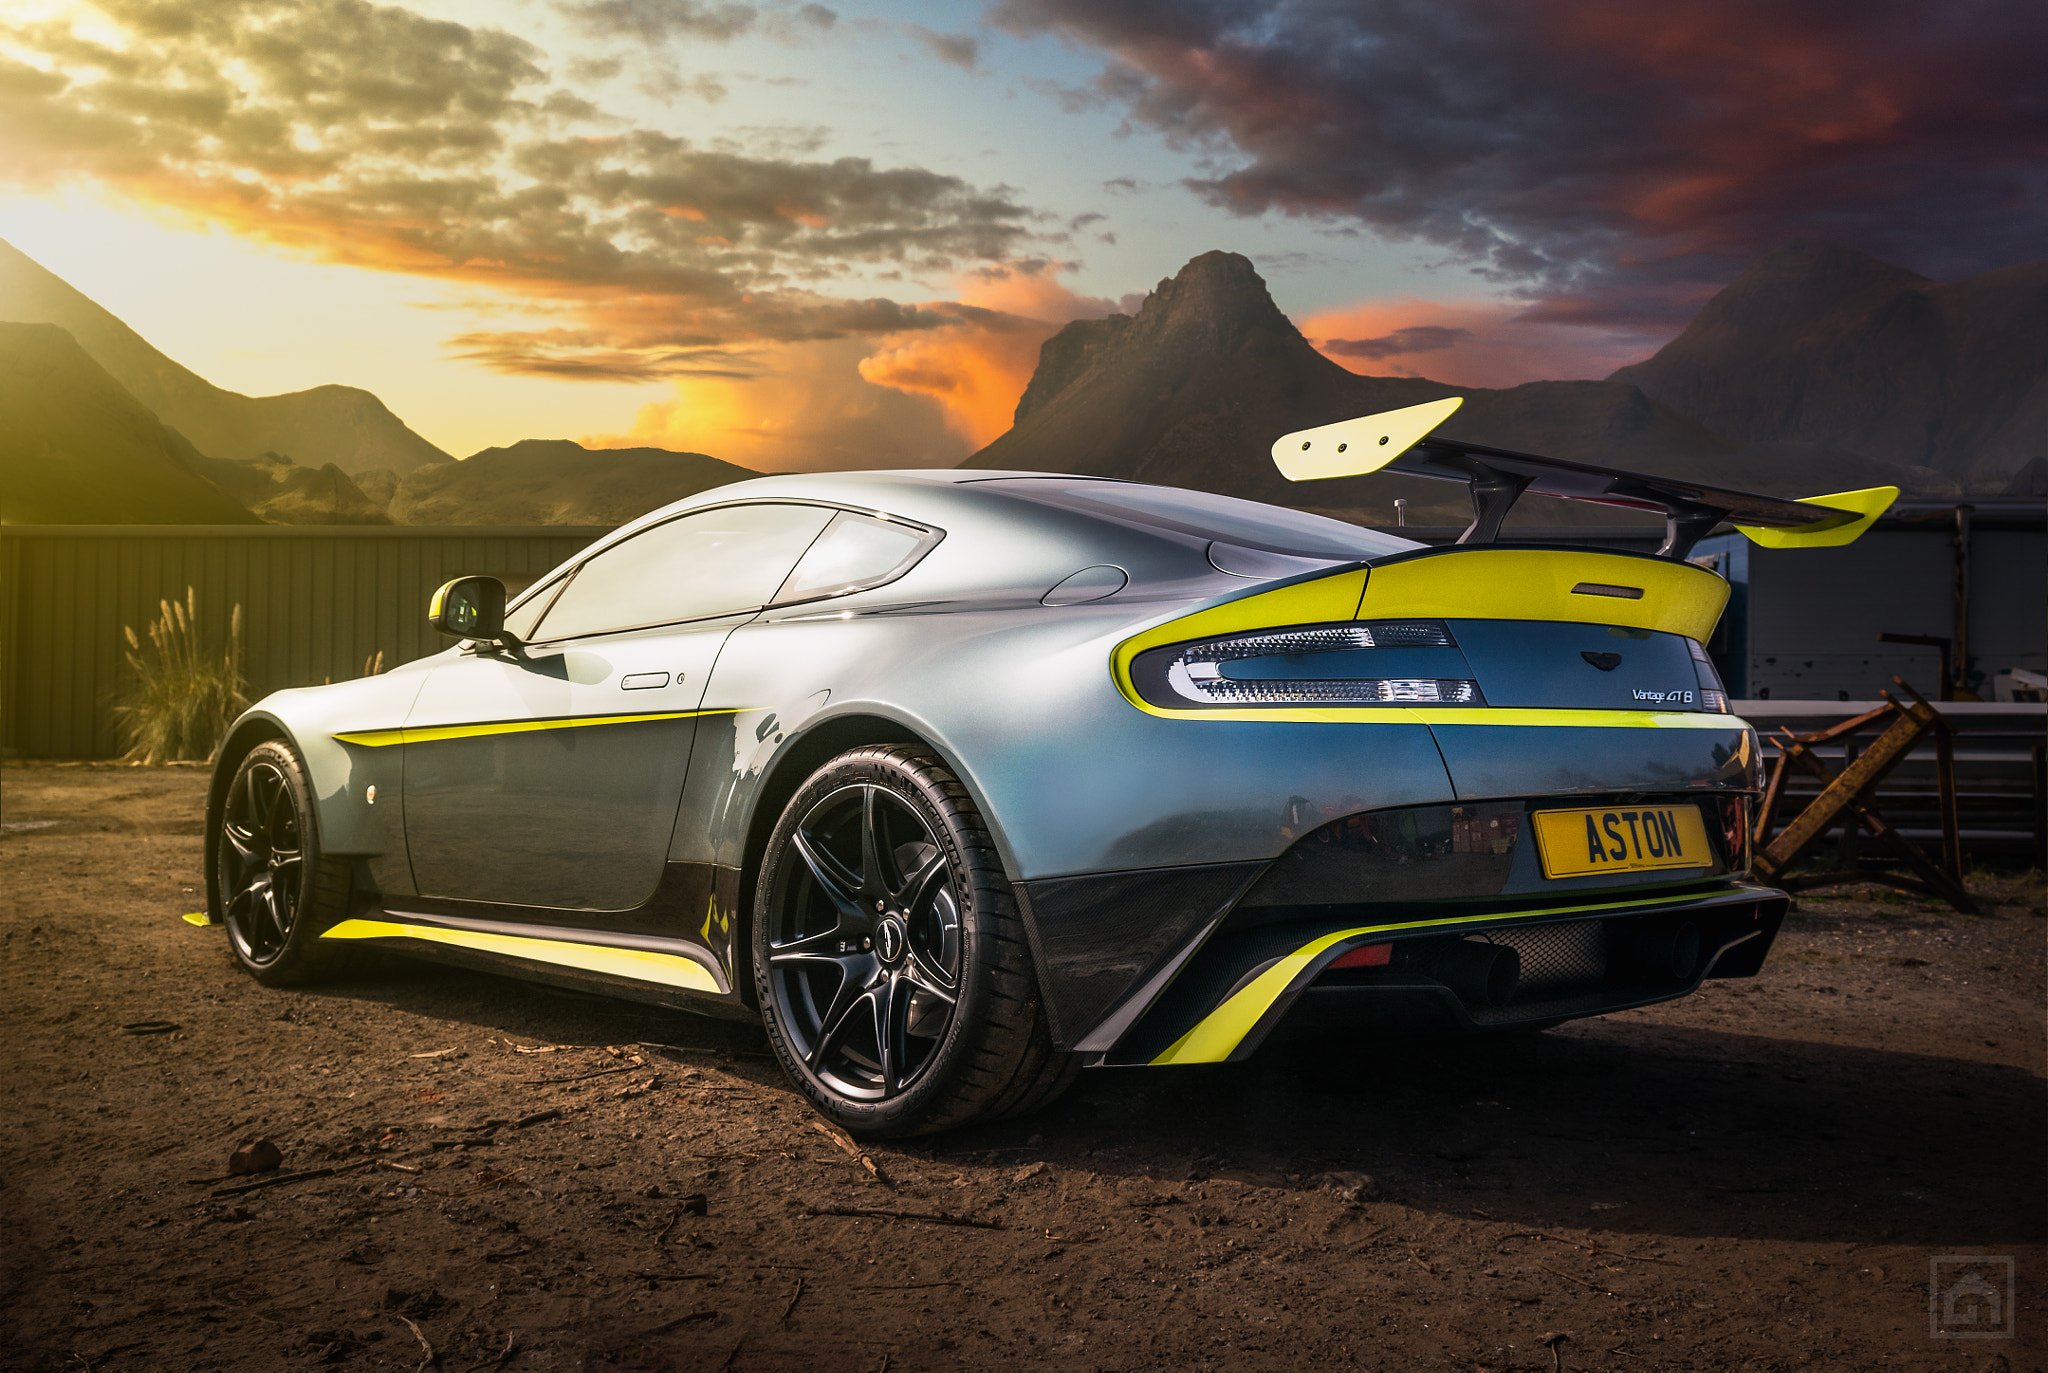 Los mejores fondos de pantalla de Aston Martin Vantage Gt8 para la pantalla del teléfono